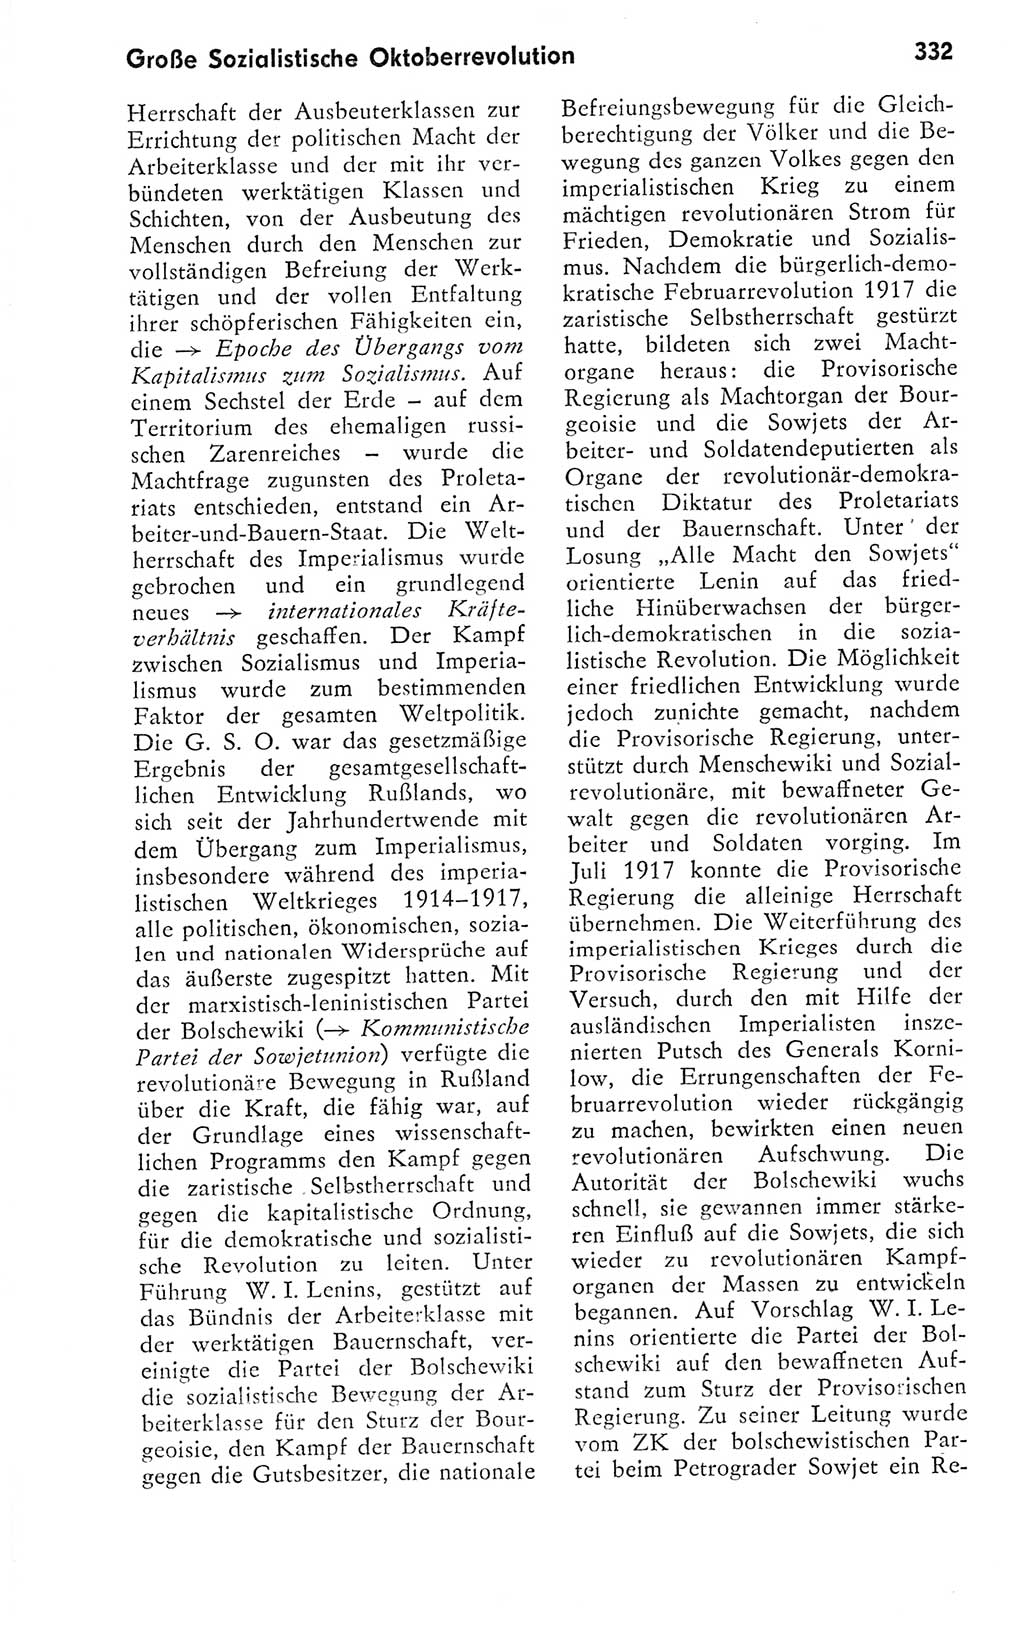 Kleines politisches Wörterbuch [Deutsche Demokratische Republik (DDR)] 1978, Seite 332 (Kl. pol. Wb. DDR 1978, S. 332)